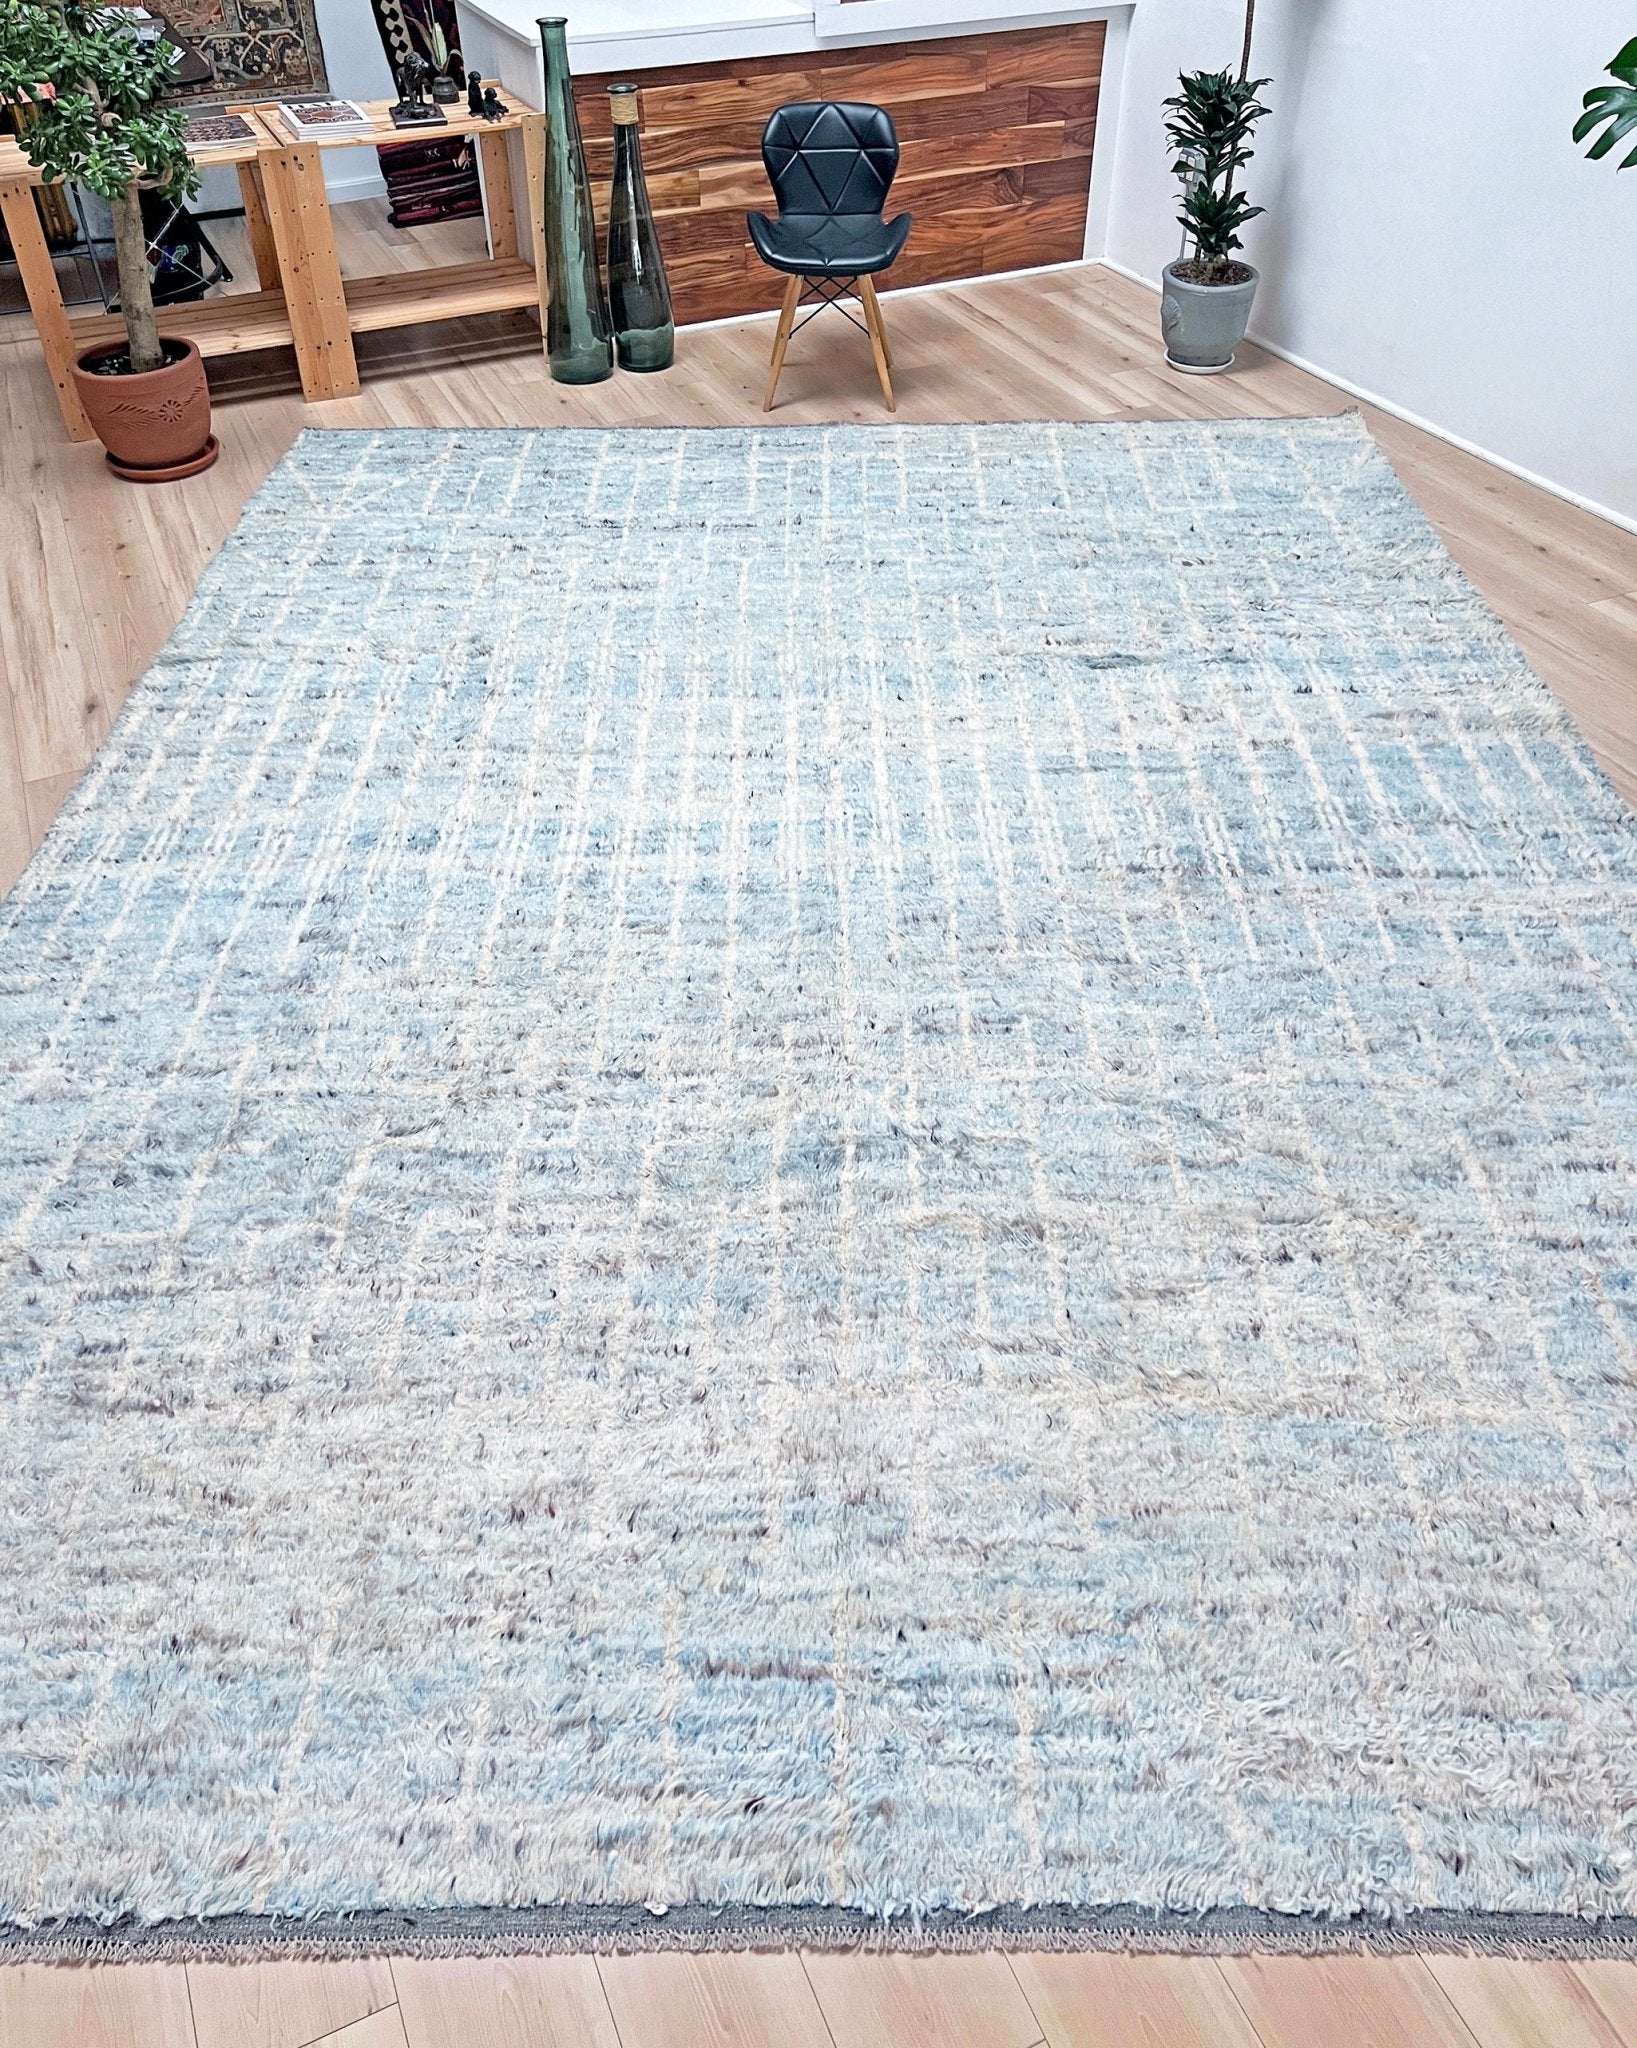 Moroccan Shag minimalist rug wool handmade 10x14 large area rug. Rug shop San Francisco Bay Area. Buy rug online.